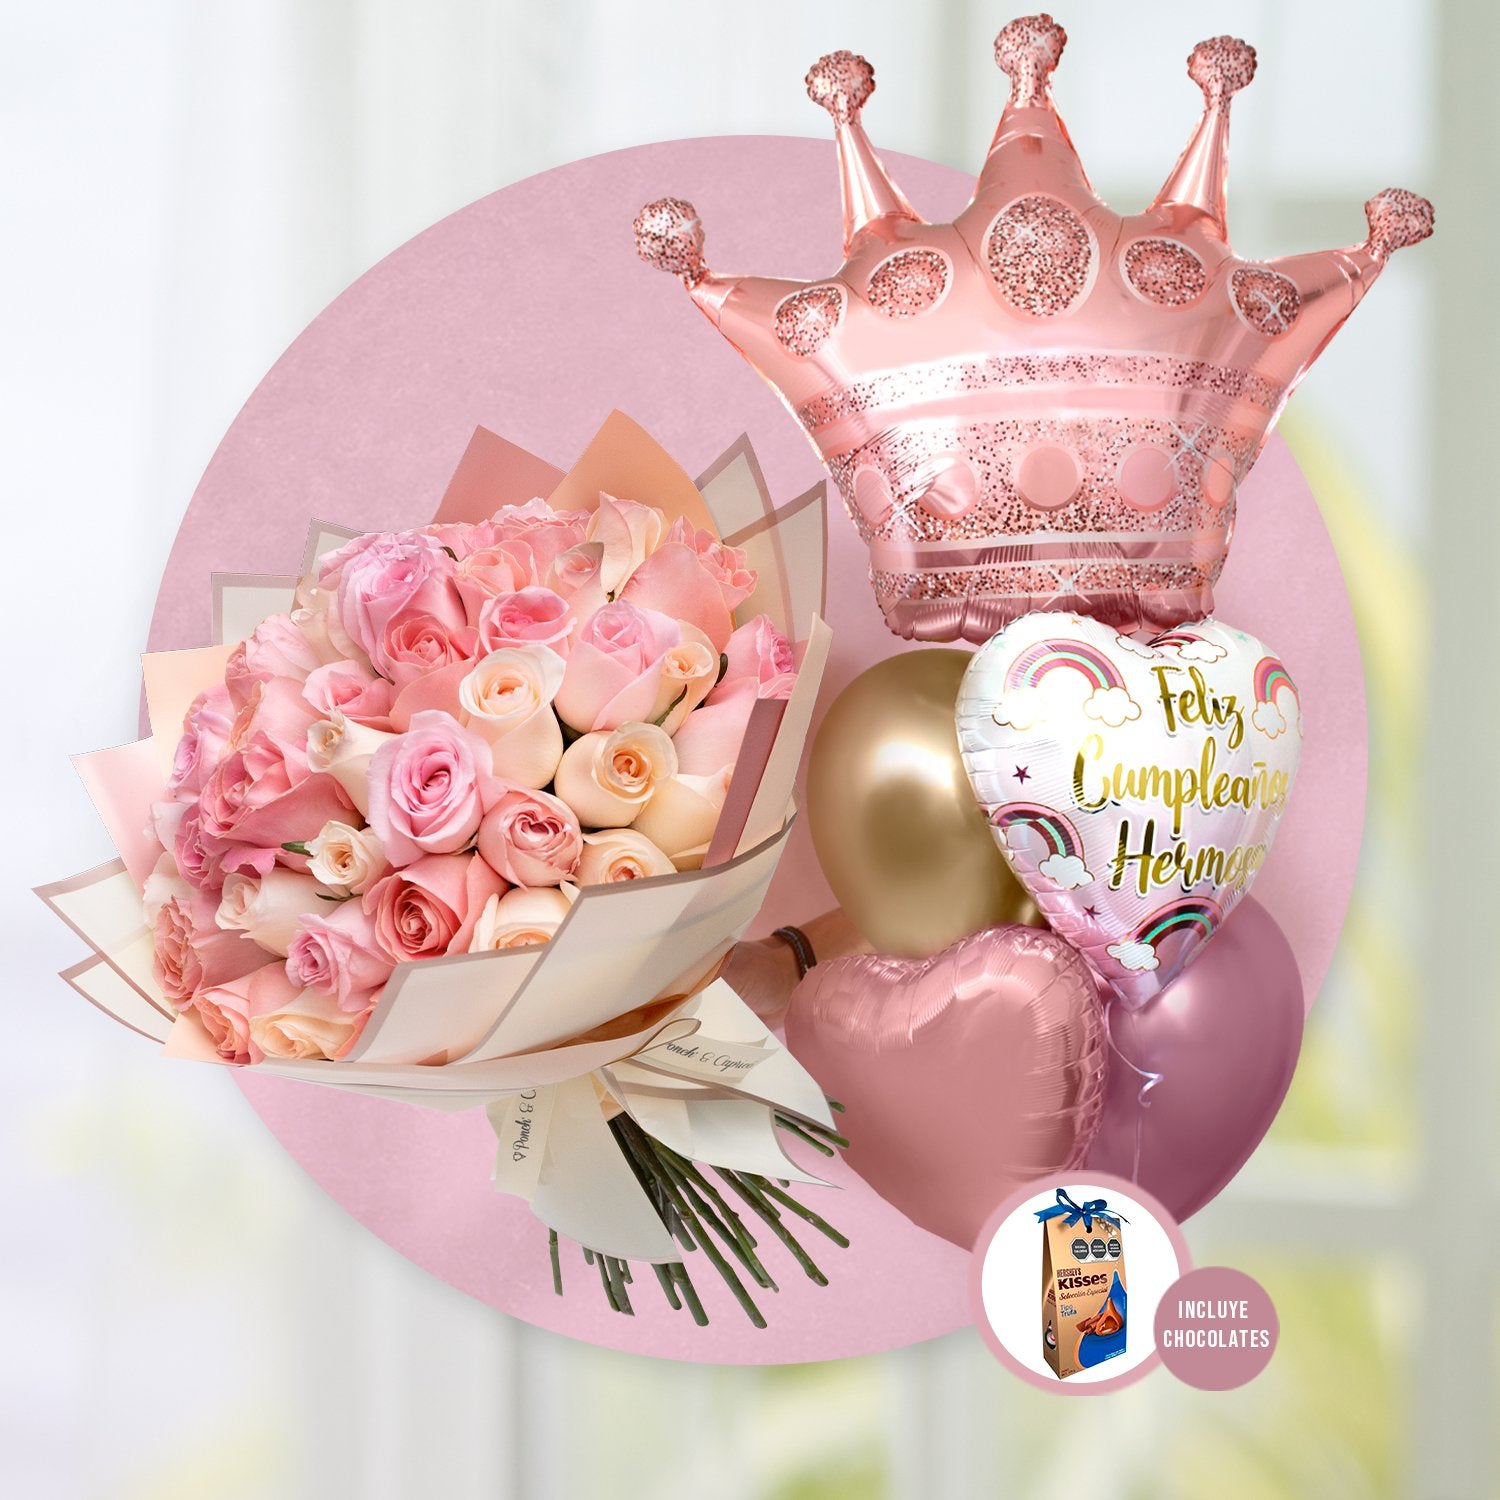 50 Rosas Hermosa, Caricia y Señorita en ramillete + Bouquet de Cumpleaños -Corona Hermosa- -SET055-